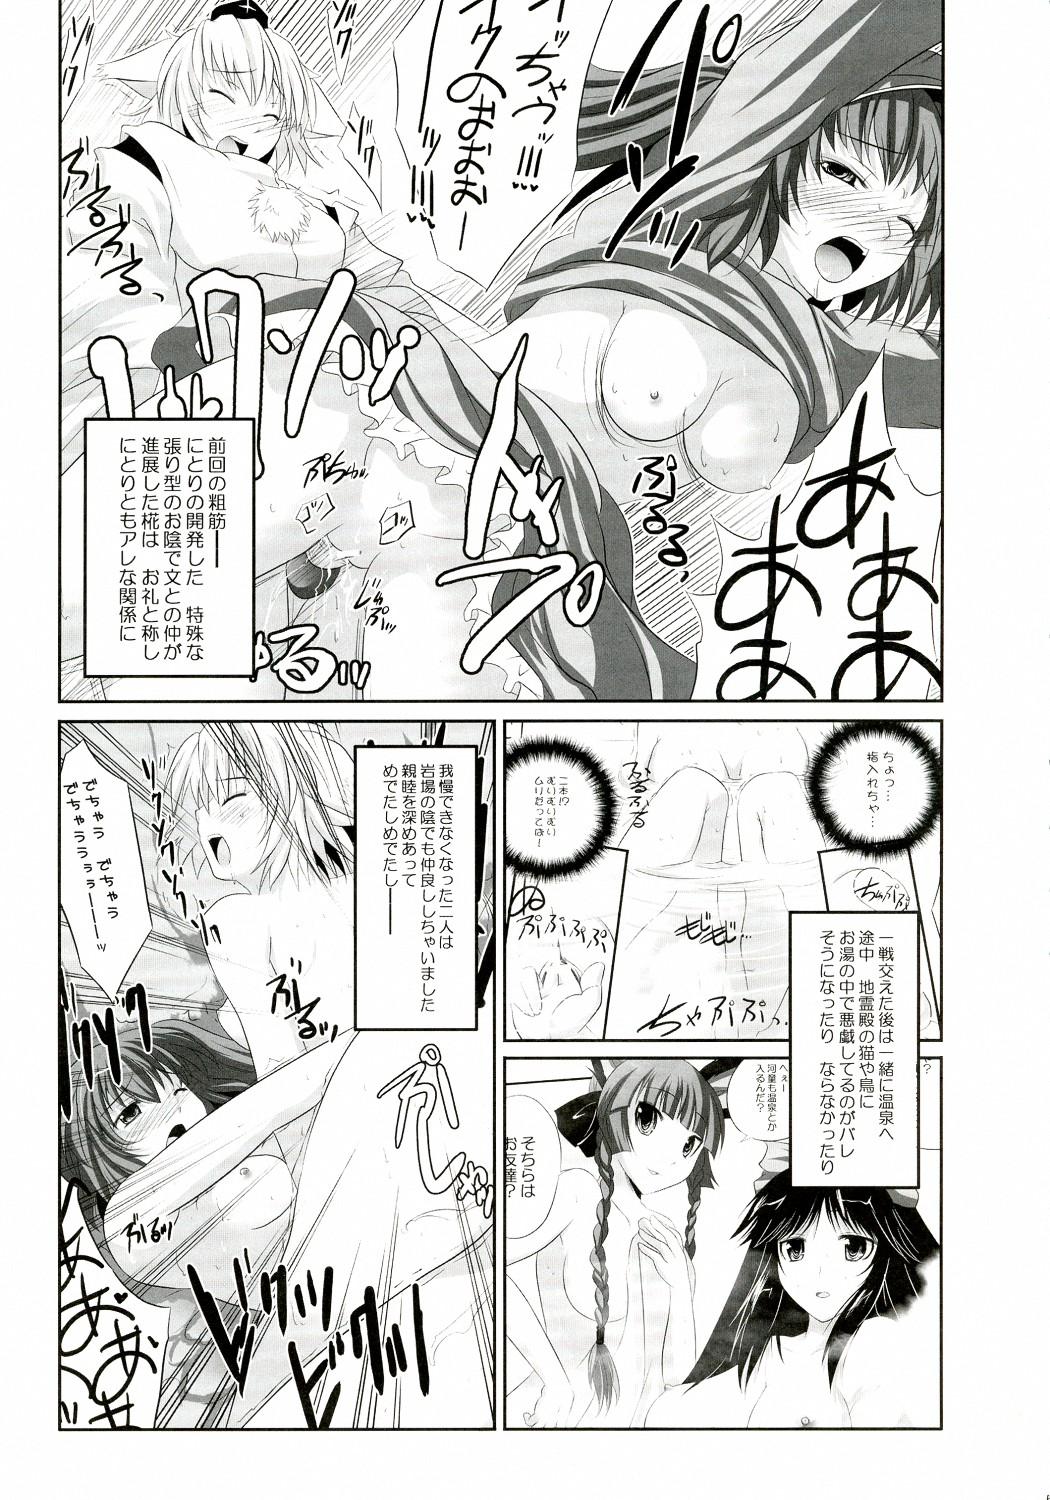 Kanojo o Nugasu 108 no Houhou Vol. 05 4